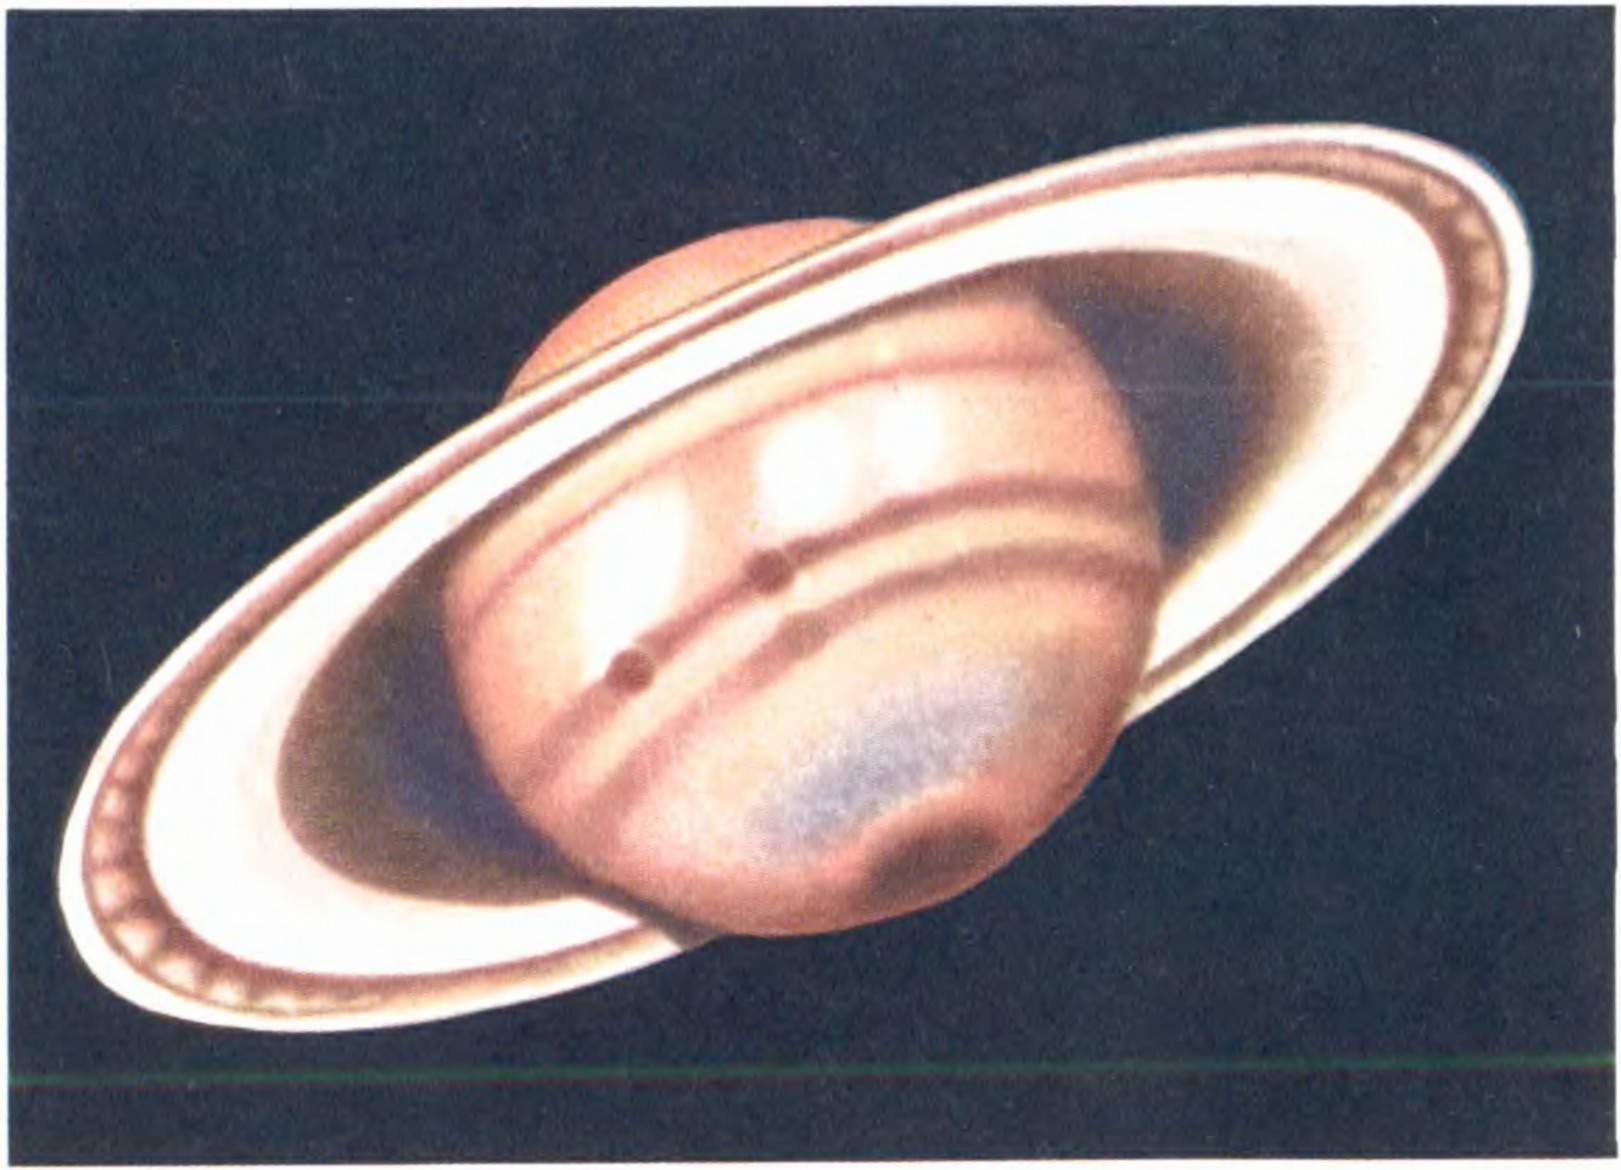 Цветные зарисовки самых крупных планет Солнечной системы — Юпитера и Сатурна